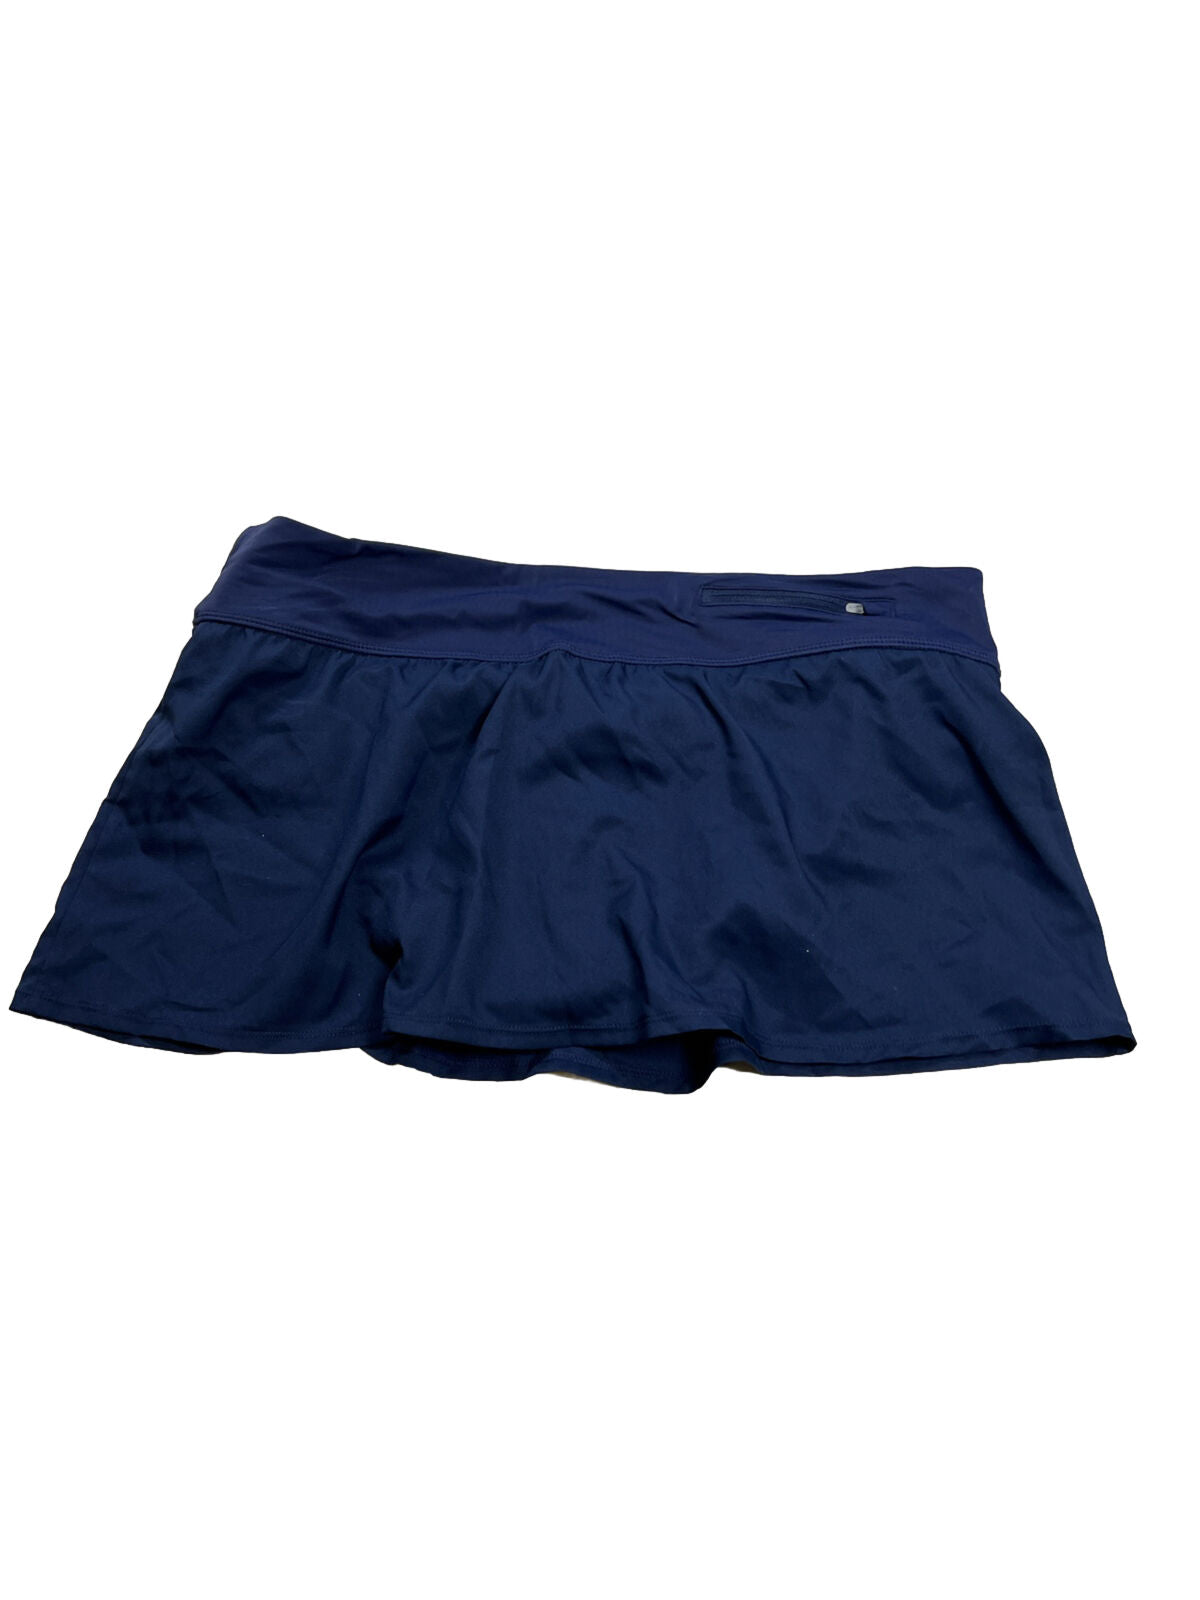 Falda de natación Nike azul marino para mujer - XL